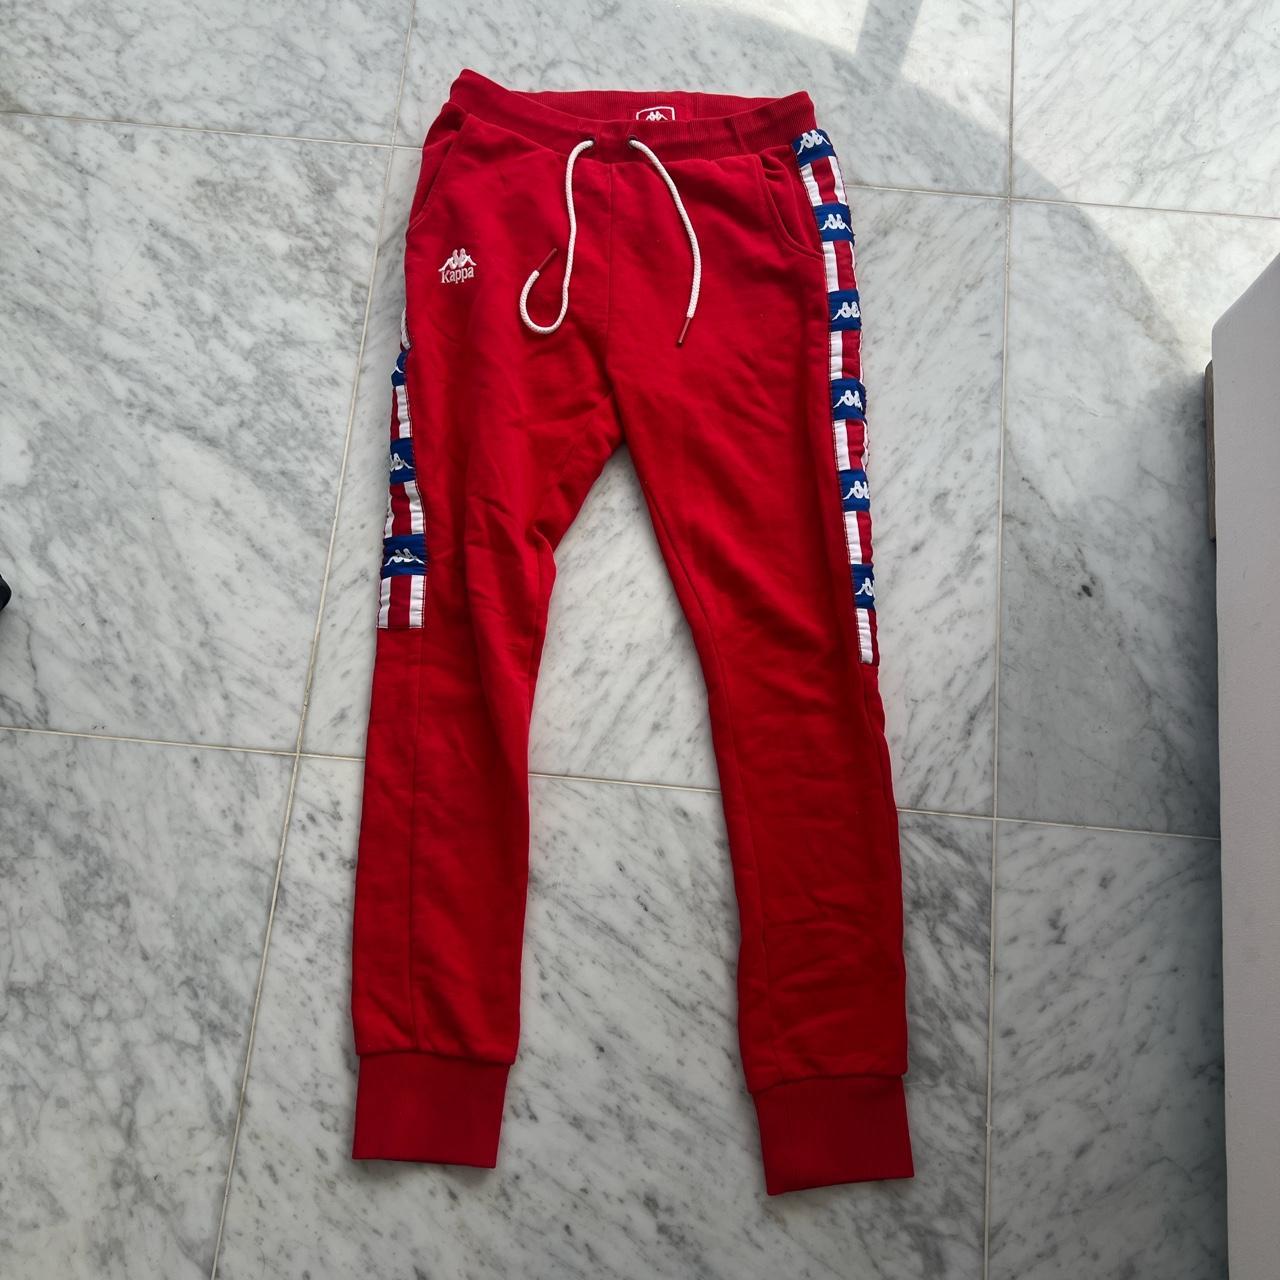 Red kappa pants - Depop